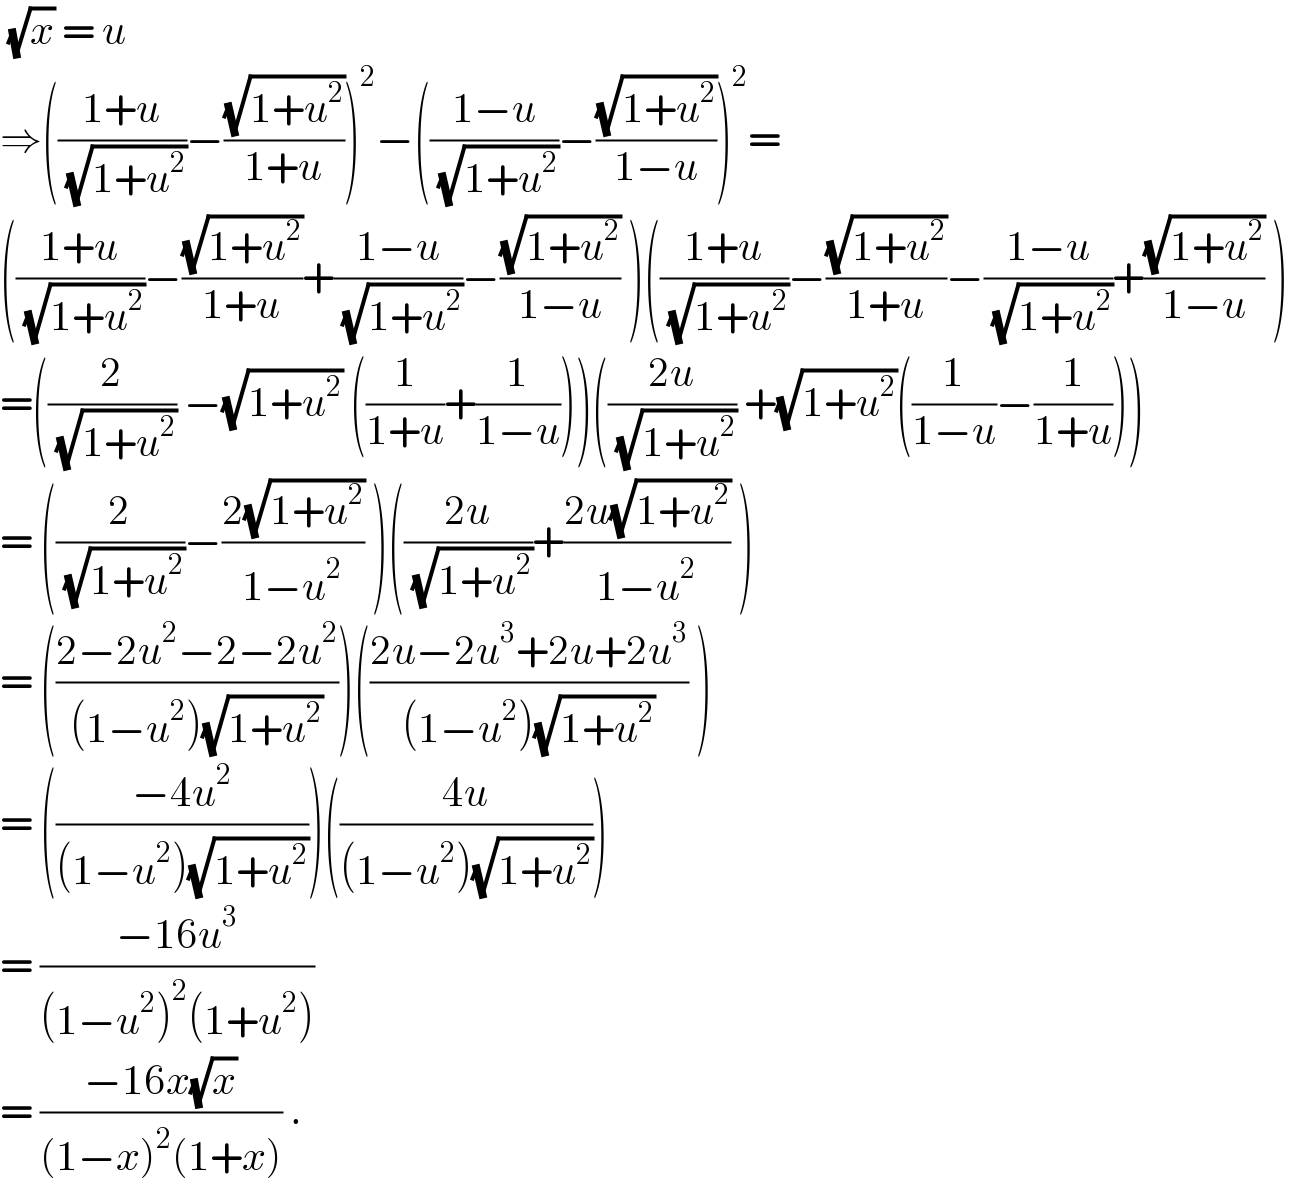  (√x) = u   ⇒(((1+u)/( (√(1+u^2 ))))−((√(1+u^2 ))/(1+u)))^2 −(((1−u)/( (√(1+u^2 ))))−((√(1+u^2 ))/(1−u)))^2 =  (((1+u)/( (√(1+u^2 ))))−((√(1+u^2 ))/(1+u))+((1−u)/( (√(1+u^2 ))))−((√(1+u^2 ))/(1−u)) )(((1+u)/( (√(1+u^2 ))))−((√(1+u^2 ))/(1+u))−((1−u)/( (√(1+u^2 ))))+((√(1+u^2 ))/(1−u)) )  =((2/( (√(1+u^2 )))) −(√(1+u^2 )) ((1/(1+u))+(1/(1−u))))(((2u)/( (√(1+u^2 )))) +(√(1+u^2 ))((1/(1−u))−(1/(1+u))))  = ((2/( (√(1+u^2 ))))−((2(√(1+u^2 )))/(1−u^2 )) )(((2u)/( (√(1+u^2 ))))+((2u(√(1+u^2 )))/(1−u^2 )) )  = (((2−2u^2 −2−2u^2 )/((1−u^2 )(√(1+u^2 )))))(((2u−2u^3 +2u+2u^3 )/((1−u^2 )(√(1+u^2 )))) )  = (((−4u^2 )/((1−u^2 )(√(1+u^2 )))))(((4u)/((1−u^2 )(√(1+u^2 )))))  = ((−16u^3 )/((1−u^2 )^2 (1+u^2 )))  = ((−16x(√x))/((1−x)^2 (1+x))) .  